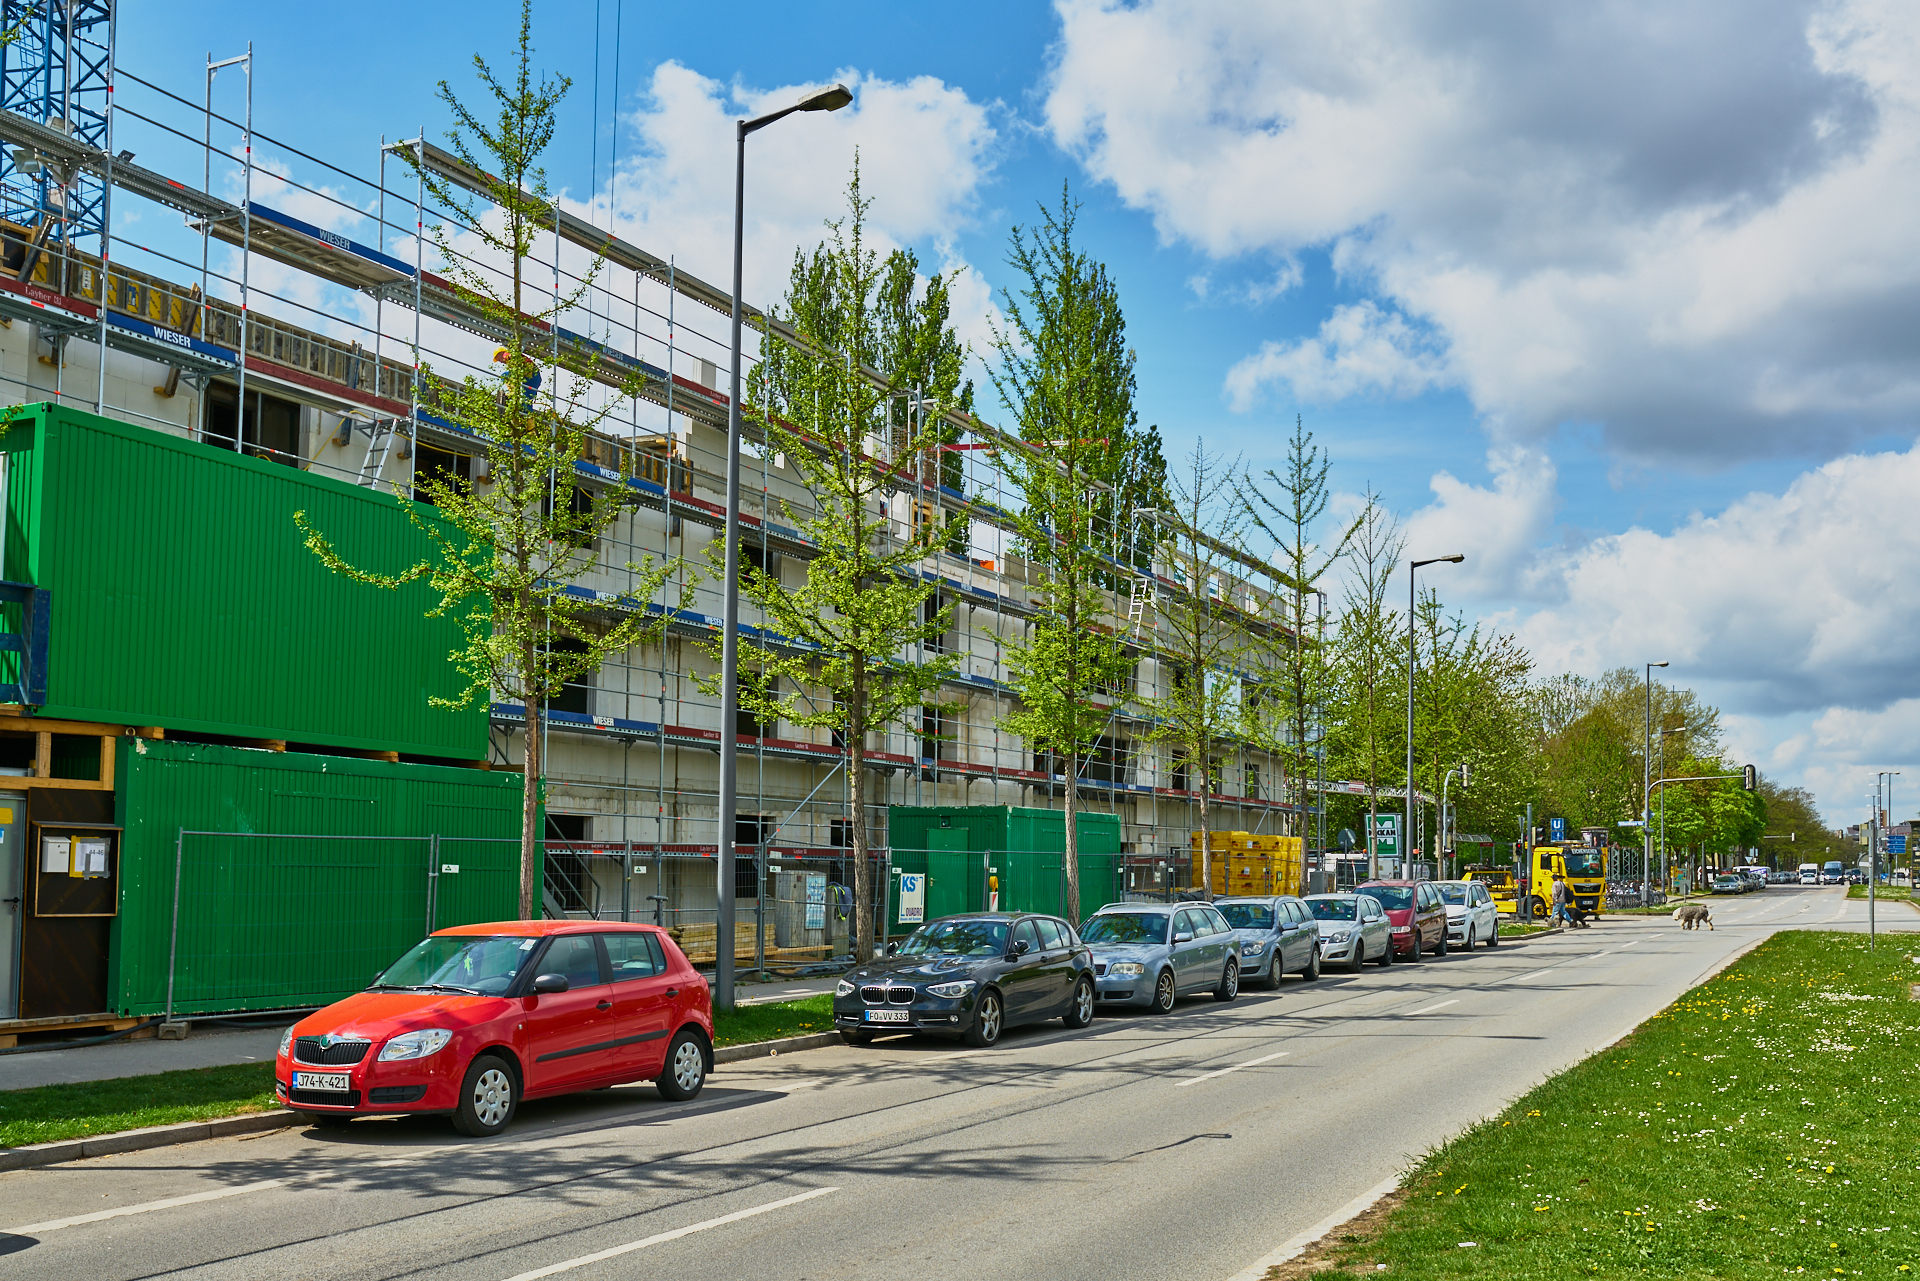 24.04.2018 - Baustelle Maikäfersiedlung in der Bad Schachener Straße in Neuperlach